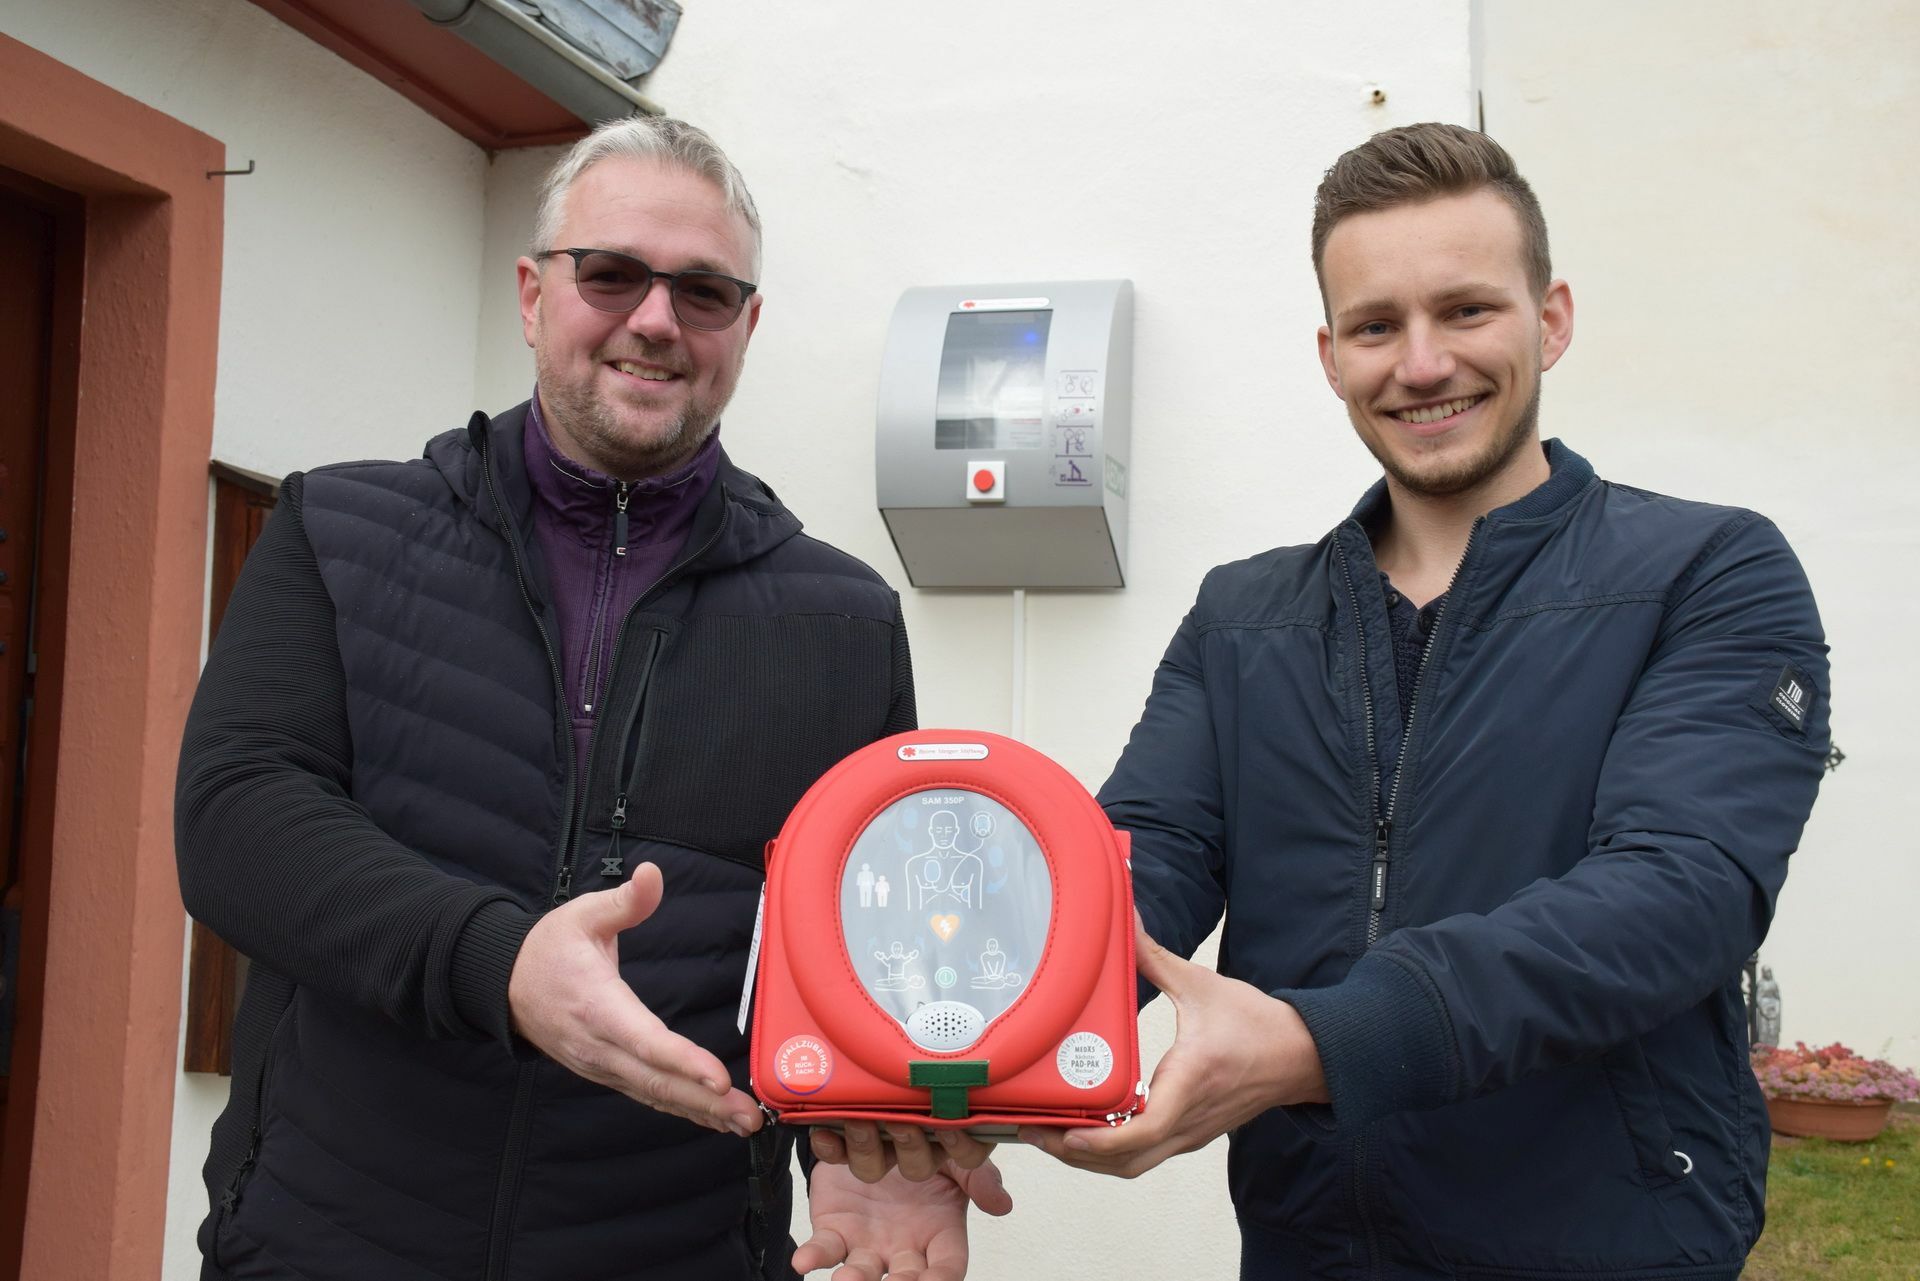 Defibrillator In Lessenich Geklaut Schleiden Wochenspiegel